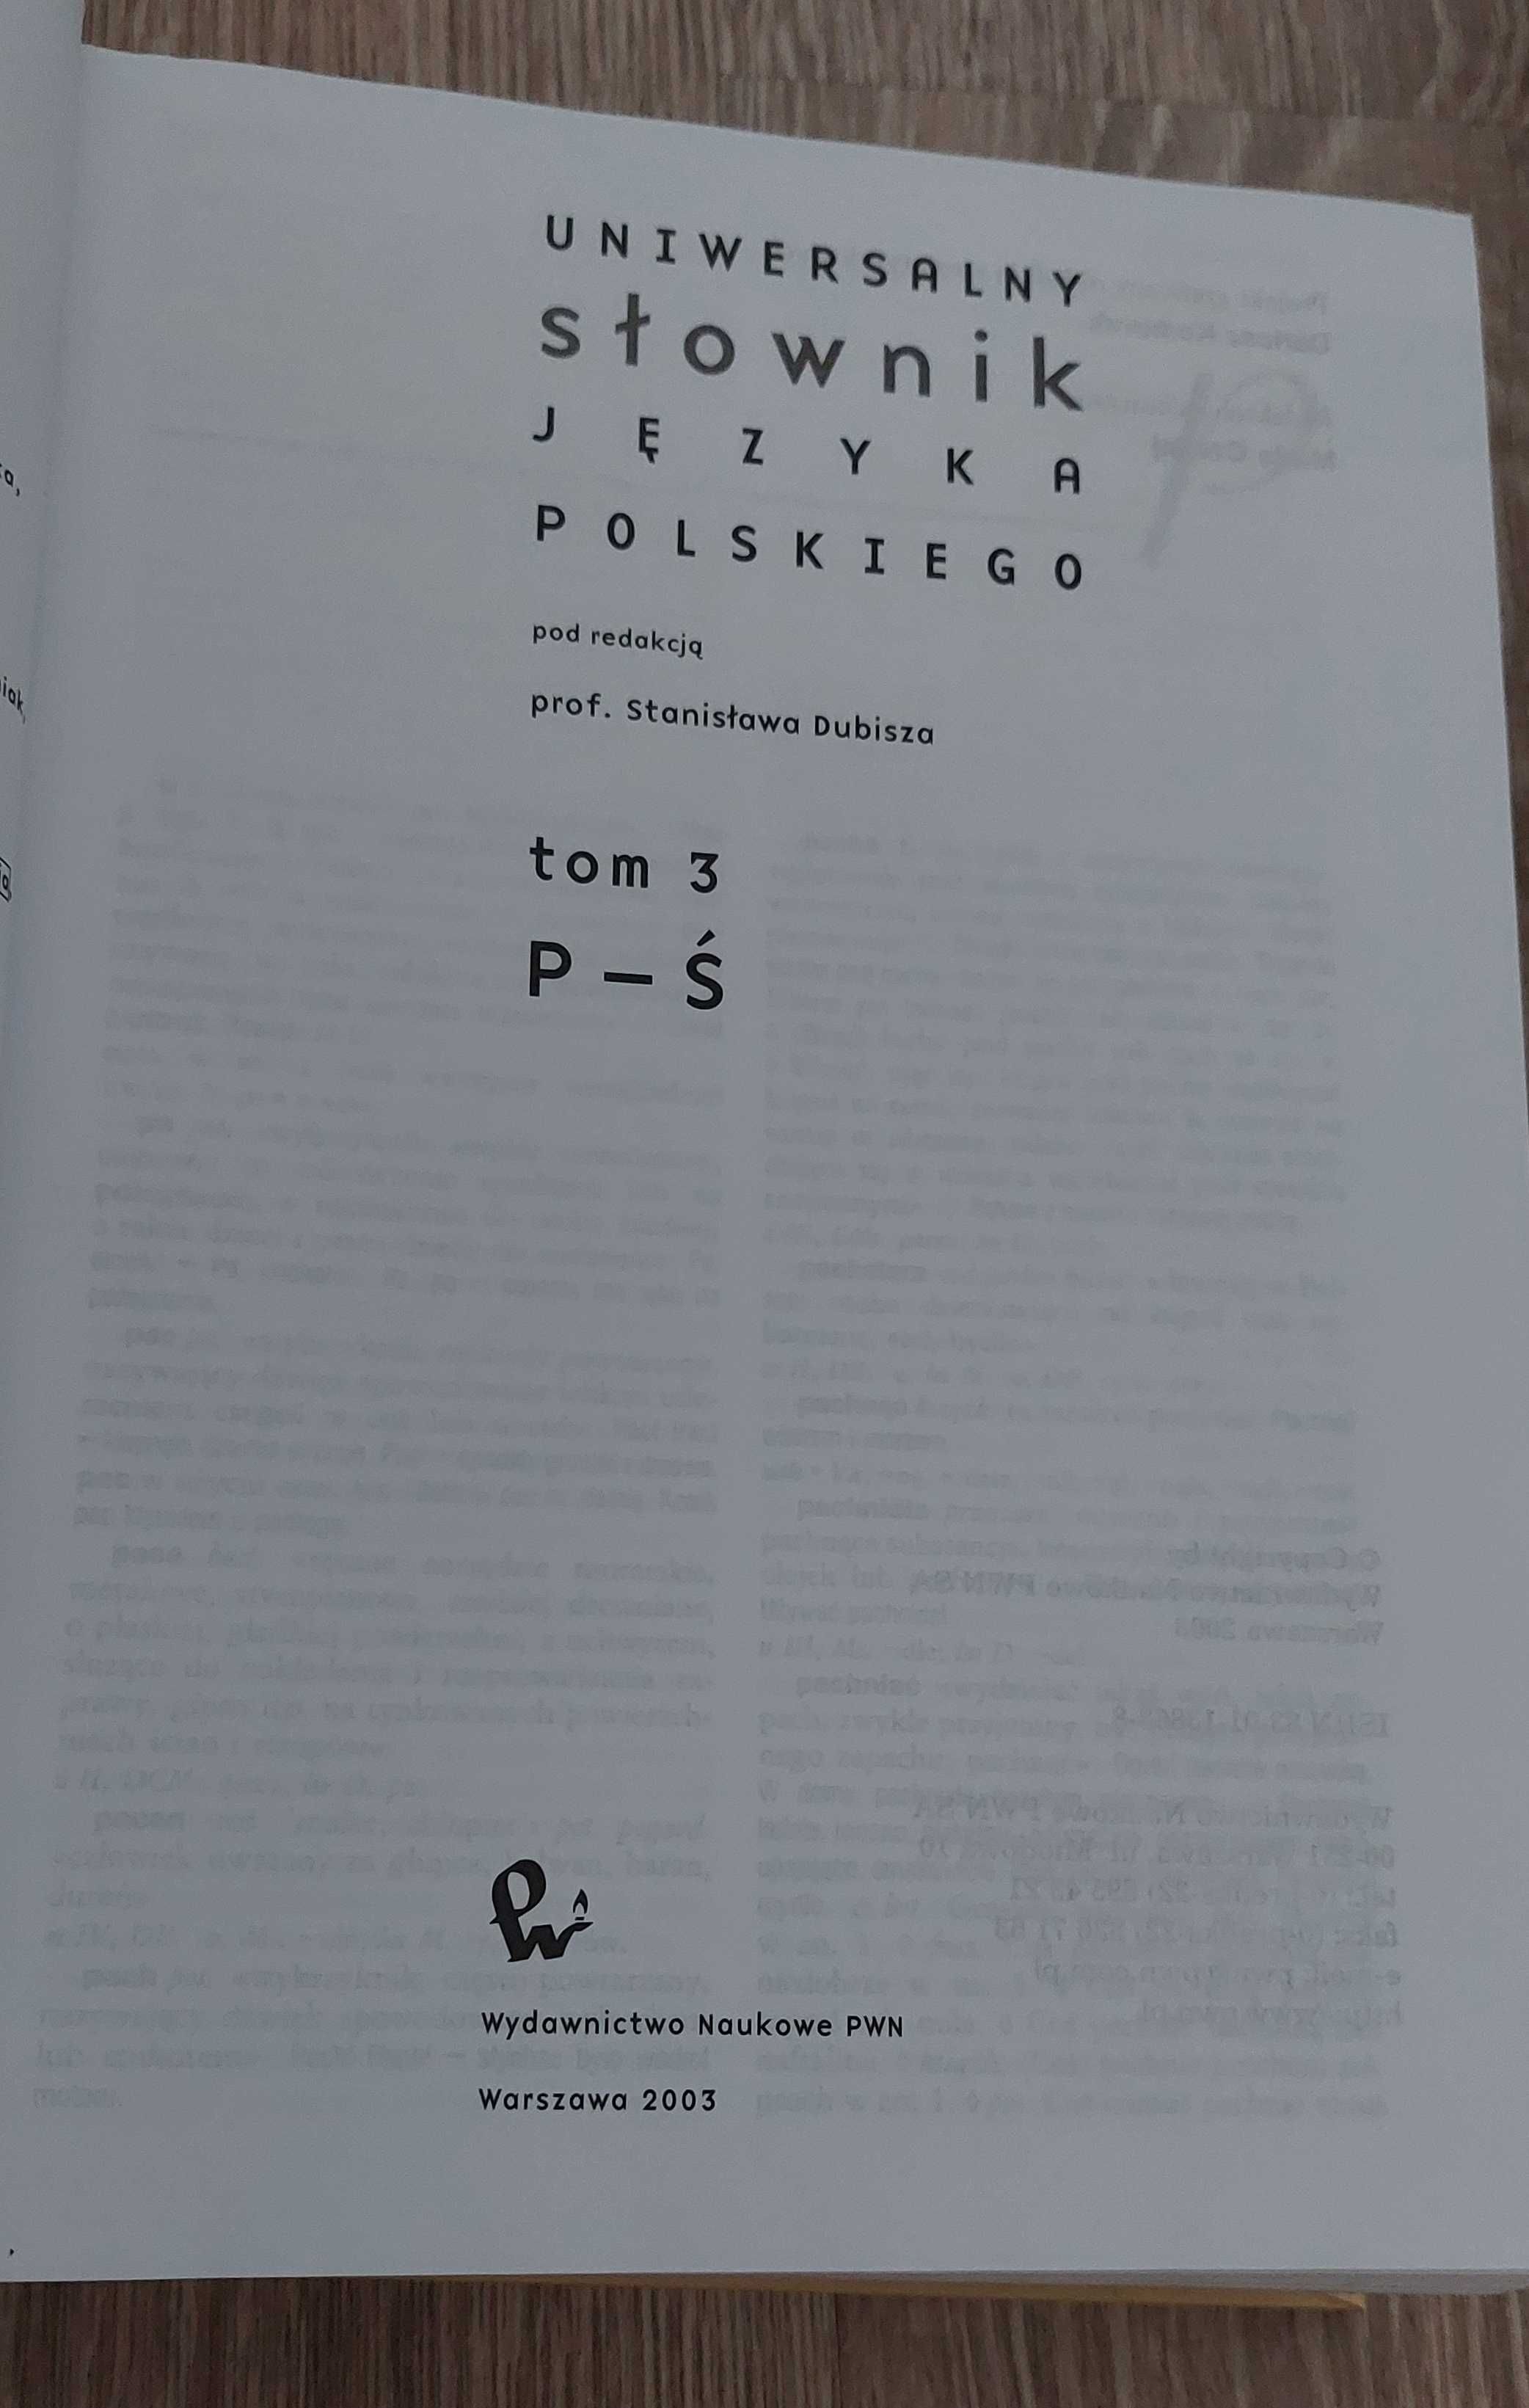 Słownik języka polskiego 4 tomy, 2003